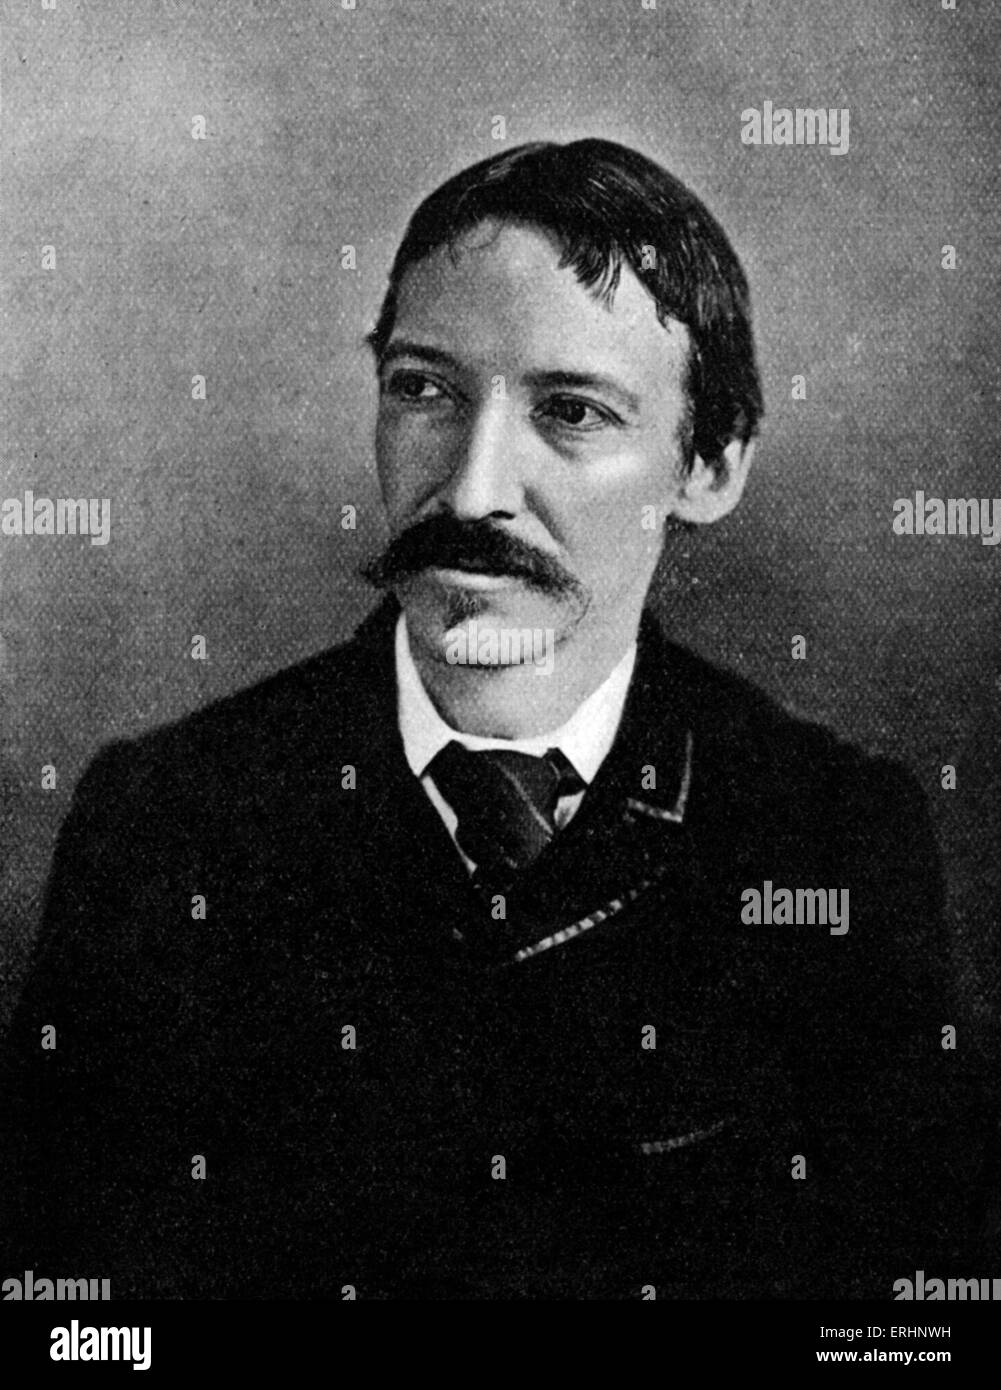 Robert Louis Stevenson - écrivain écossais : 13 novembre 1850 - 3 décembre 1894. Banque D'Images